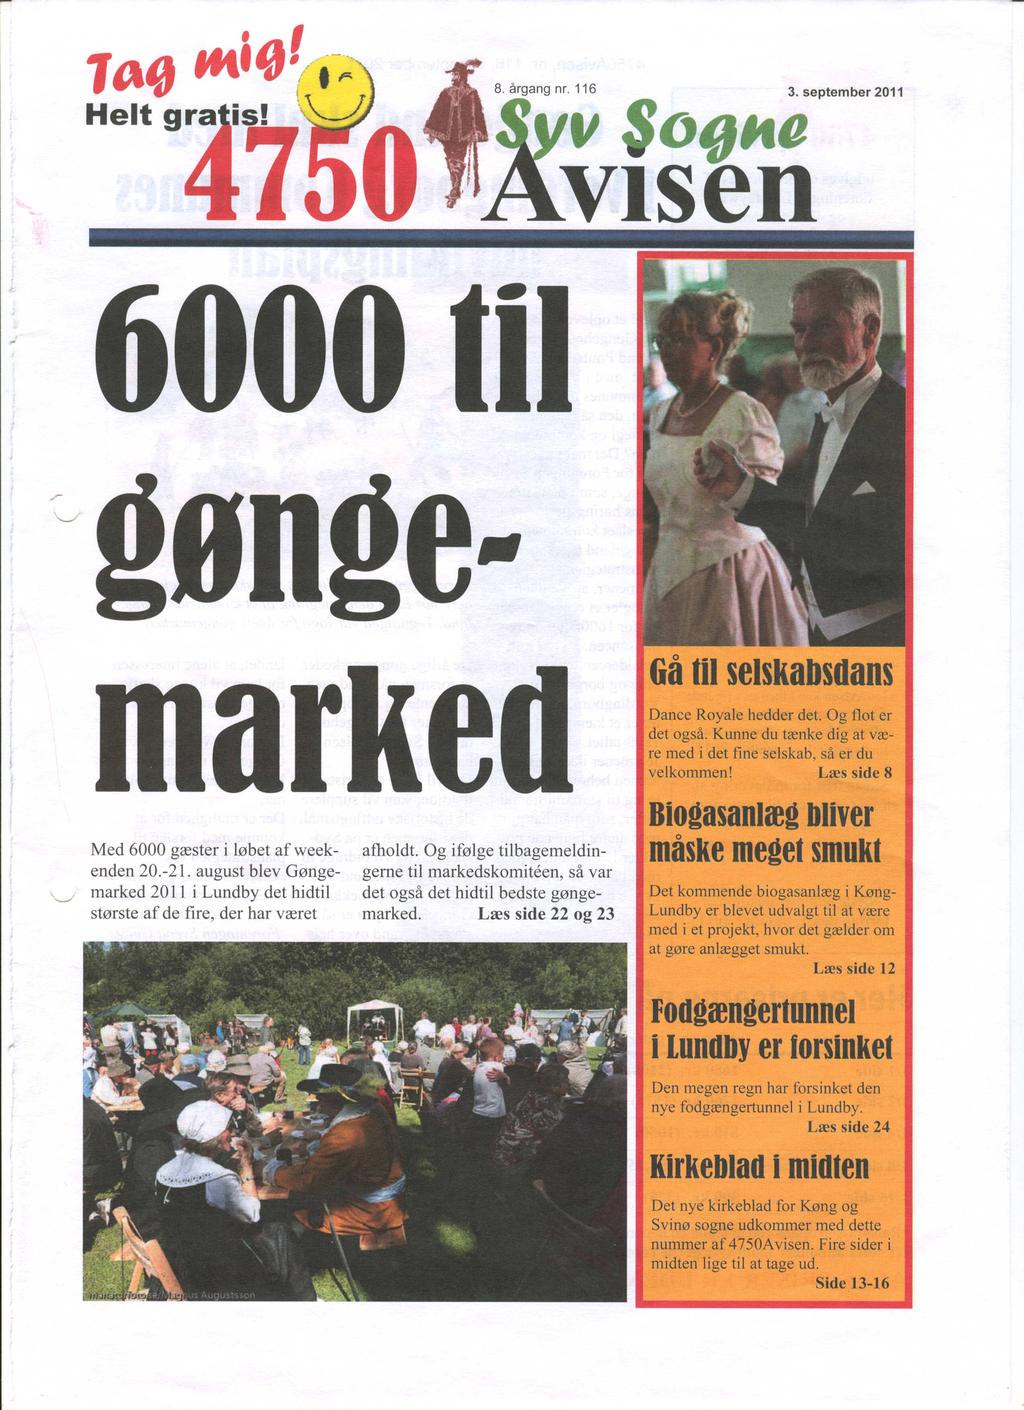 II OflHtl visen Med 6000 gæster i løbet afweekenden 20.-21. august blev Gønge- \.../ marked 2011 i Lundby det hidtil største af de fire, der har været afholdt.